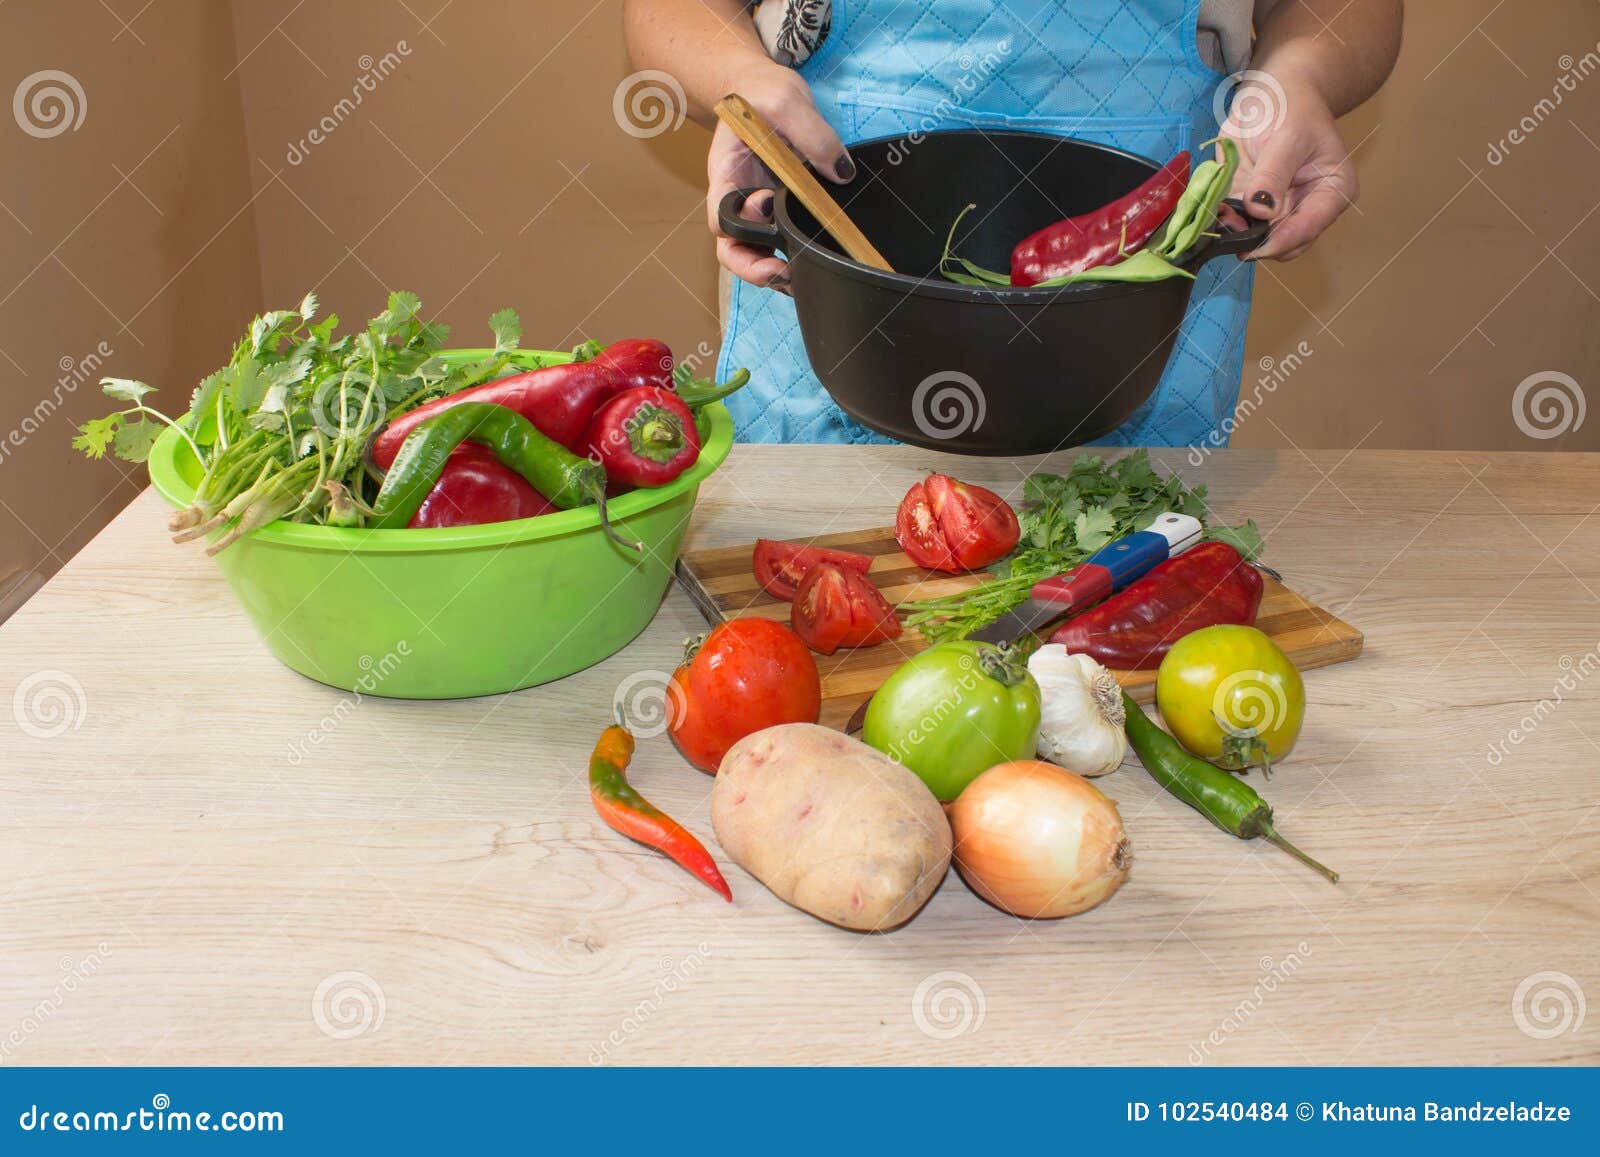 Giovane donna che cucina nella cucina Alimento sano Immagine potata delle verdure di taglio della ragazza per alimento Preparazione dei piatti